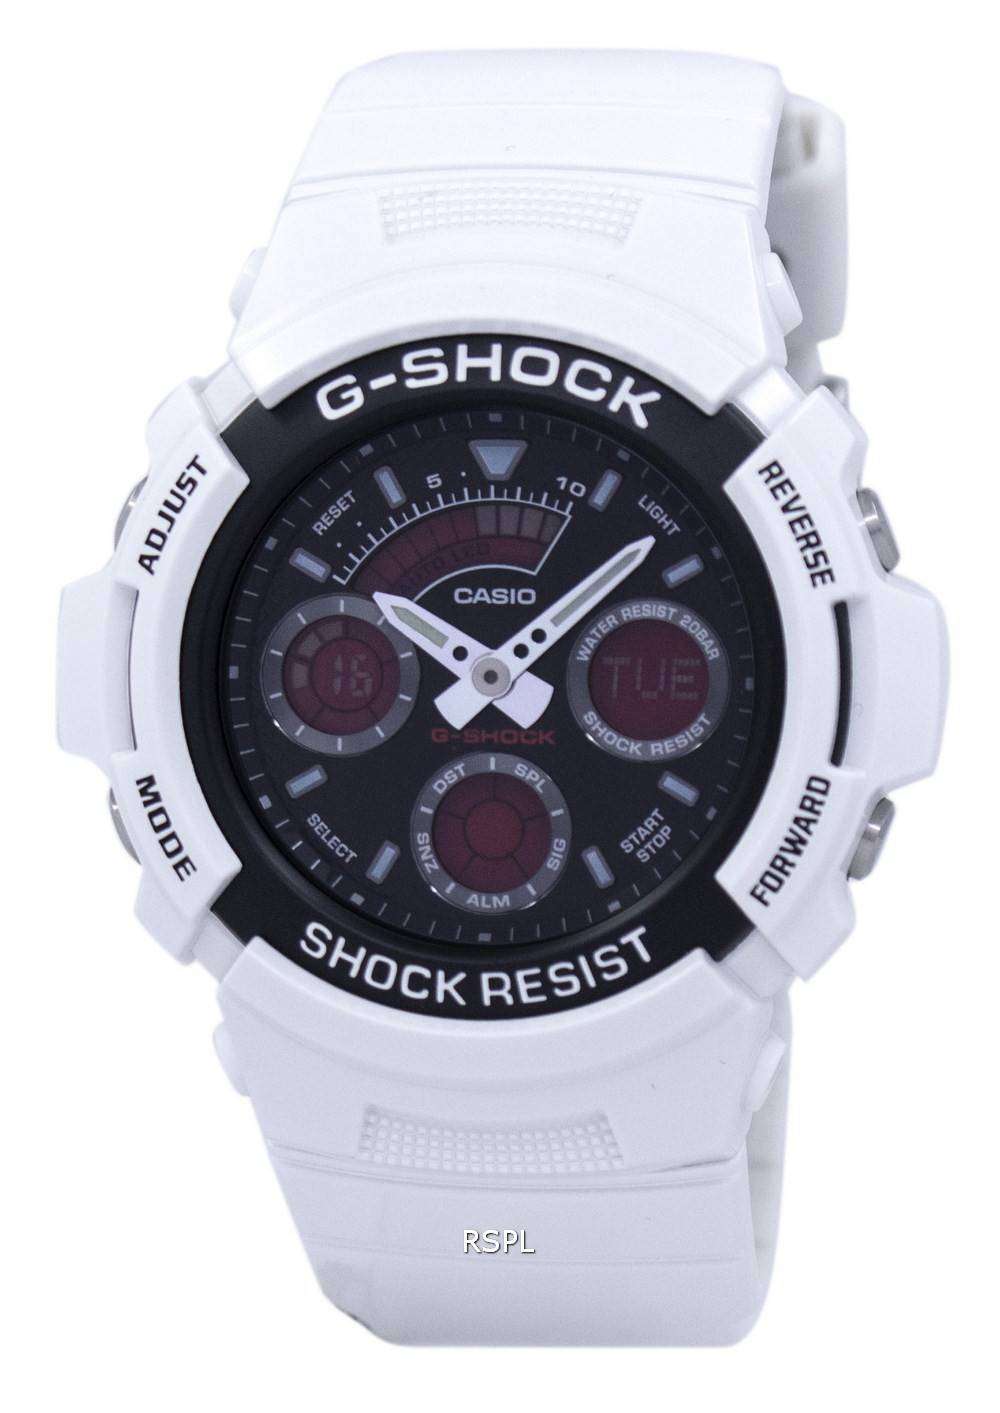 G-SHOCK AW-591SC